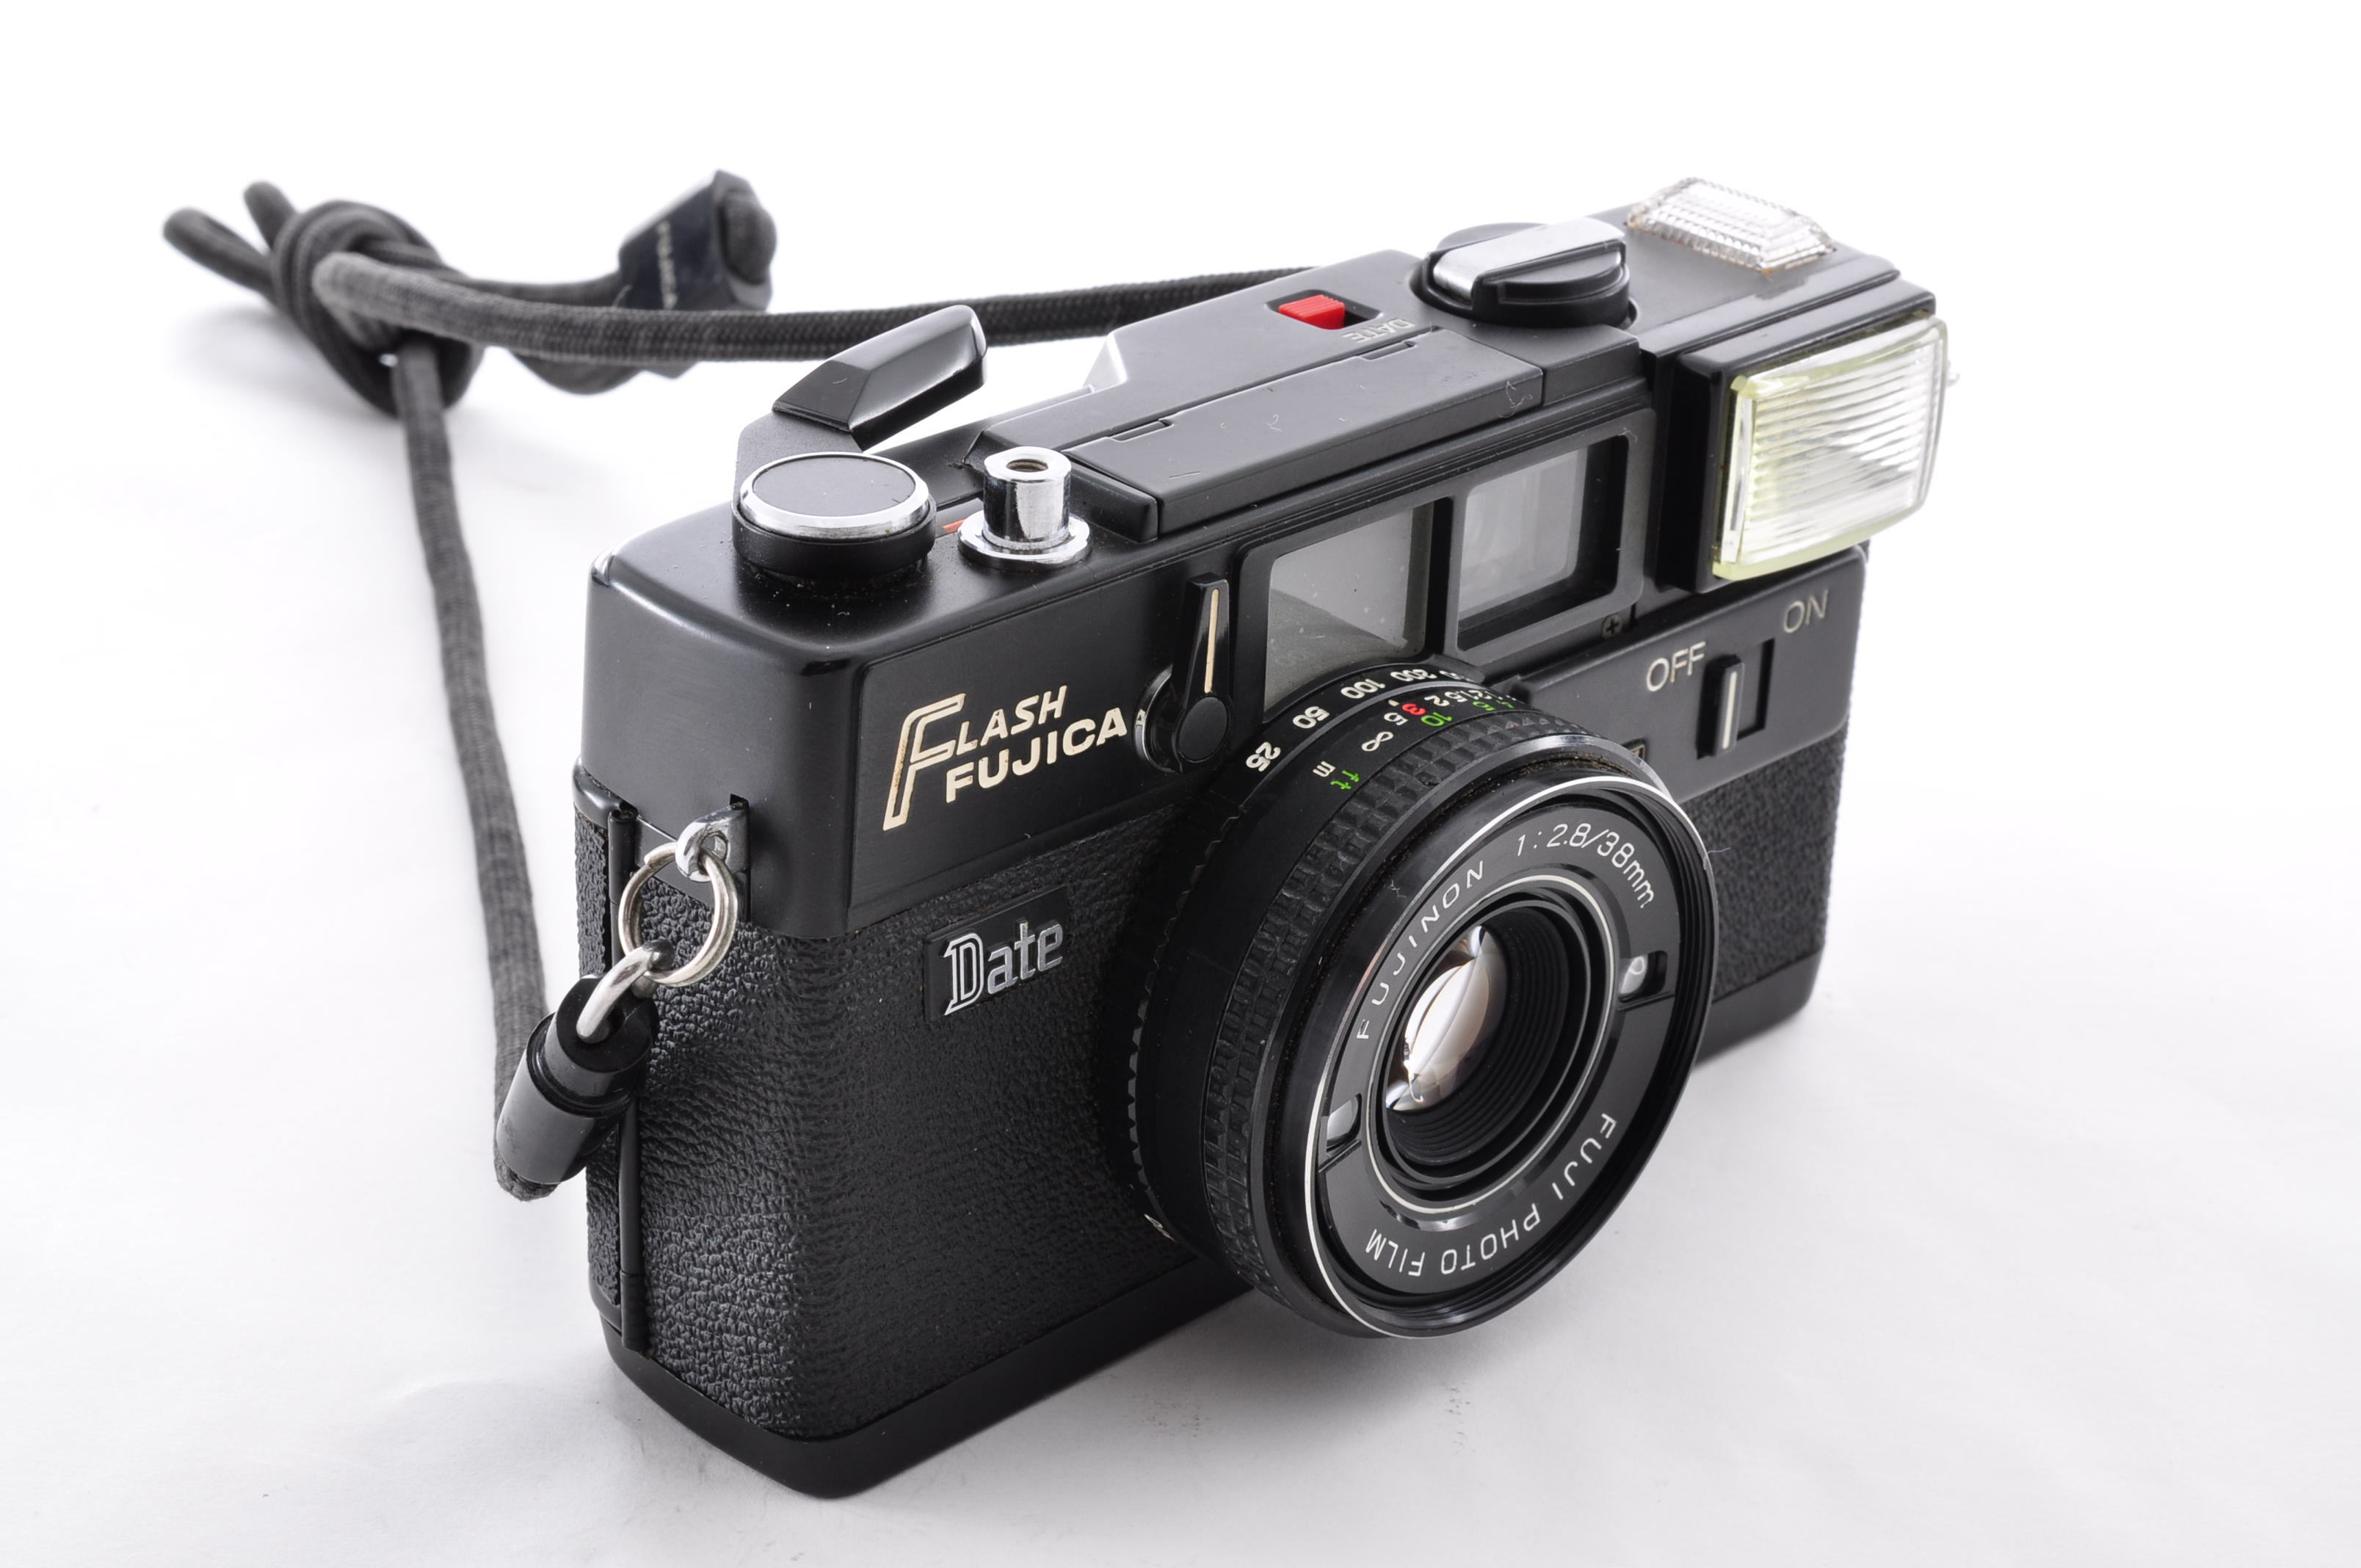 Fuji Fujifilm Flash Fujica Date Rangefinder 35mm Film Camera [Near MINT] JAPAN img03